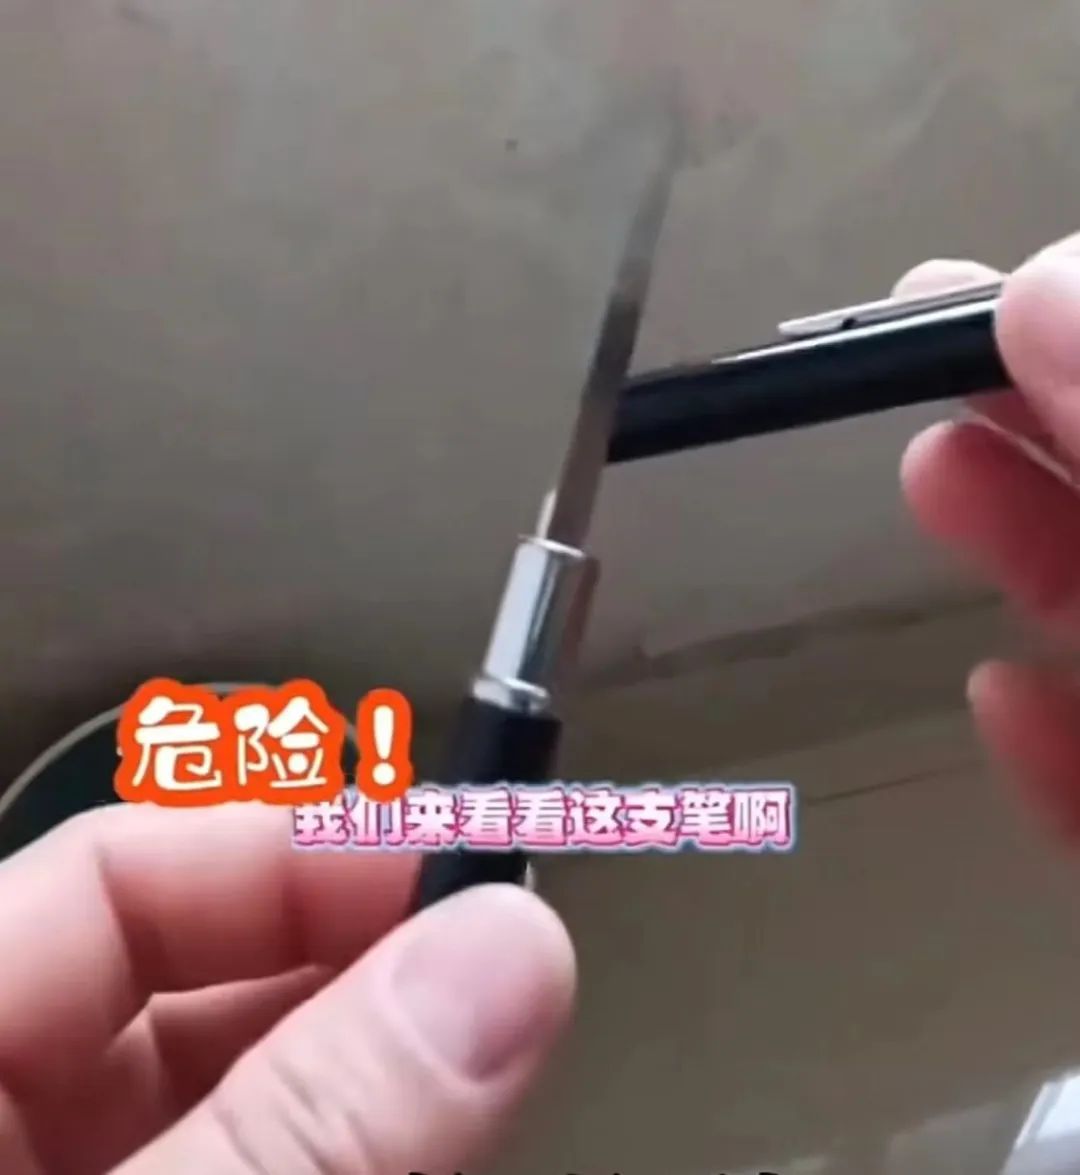 ▲河南一位学生家长展示从校门口买到的圆珠笔，打开笔帽露出的竟是一把刀。截图来自社交媒体视频